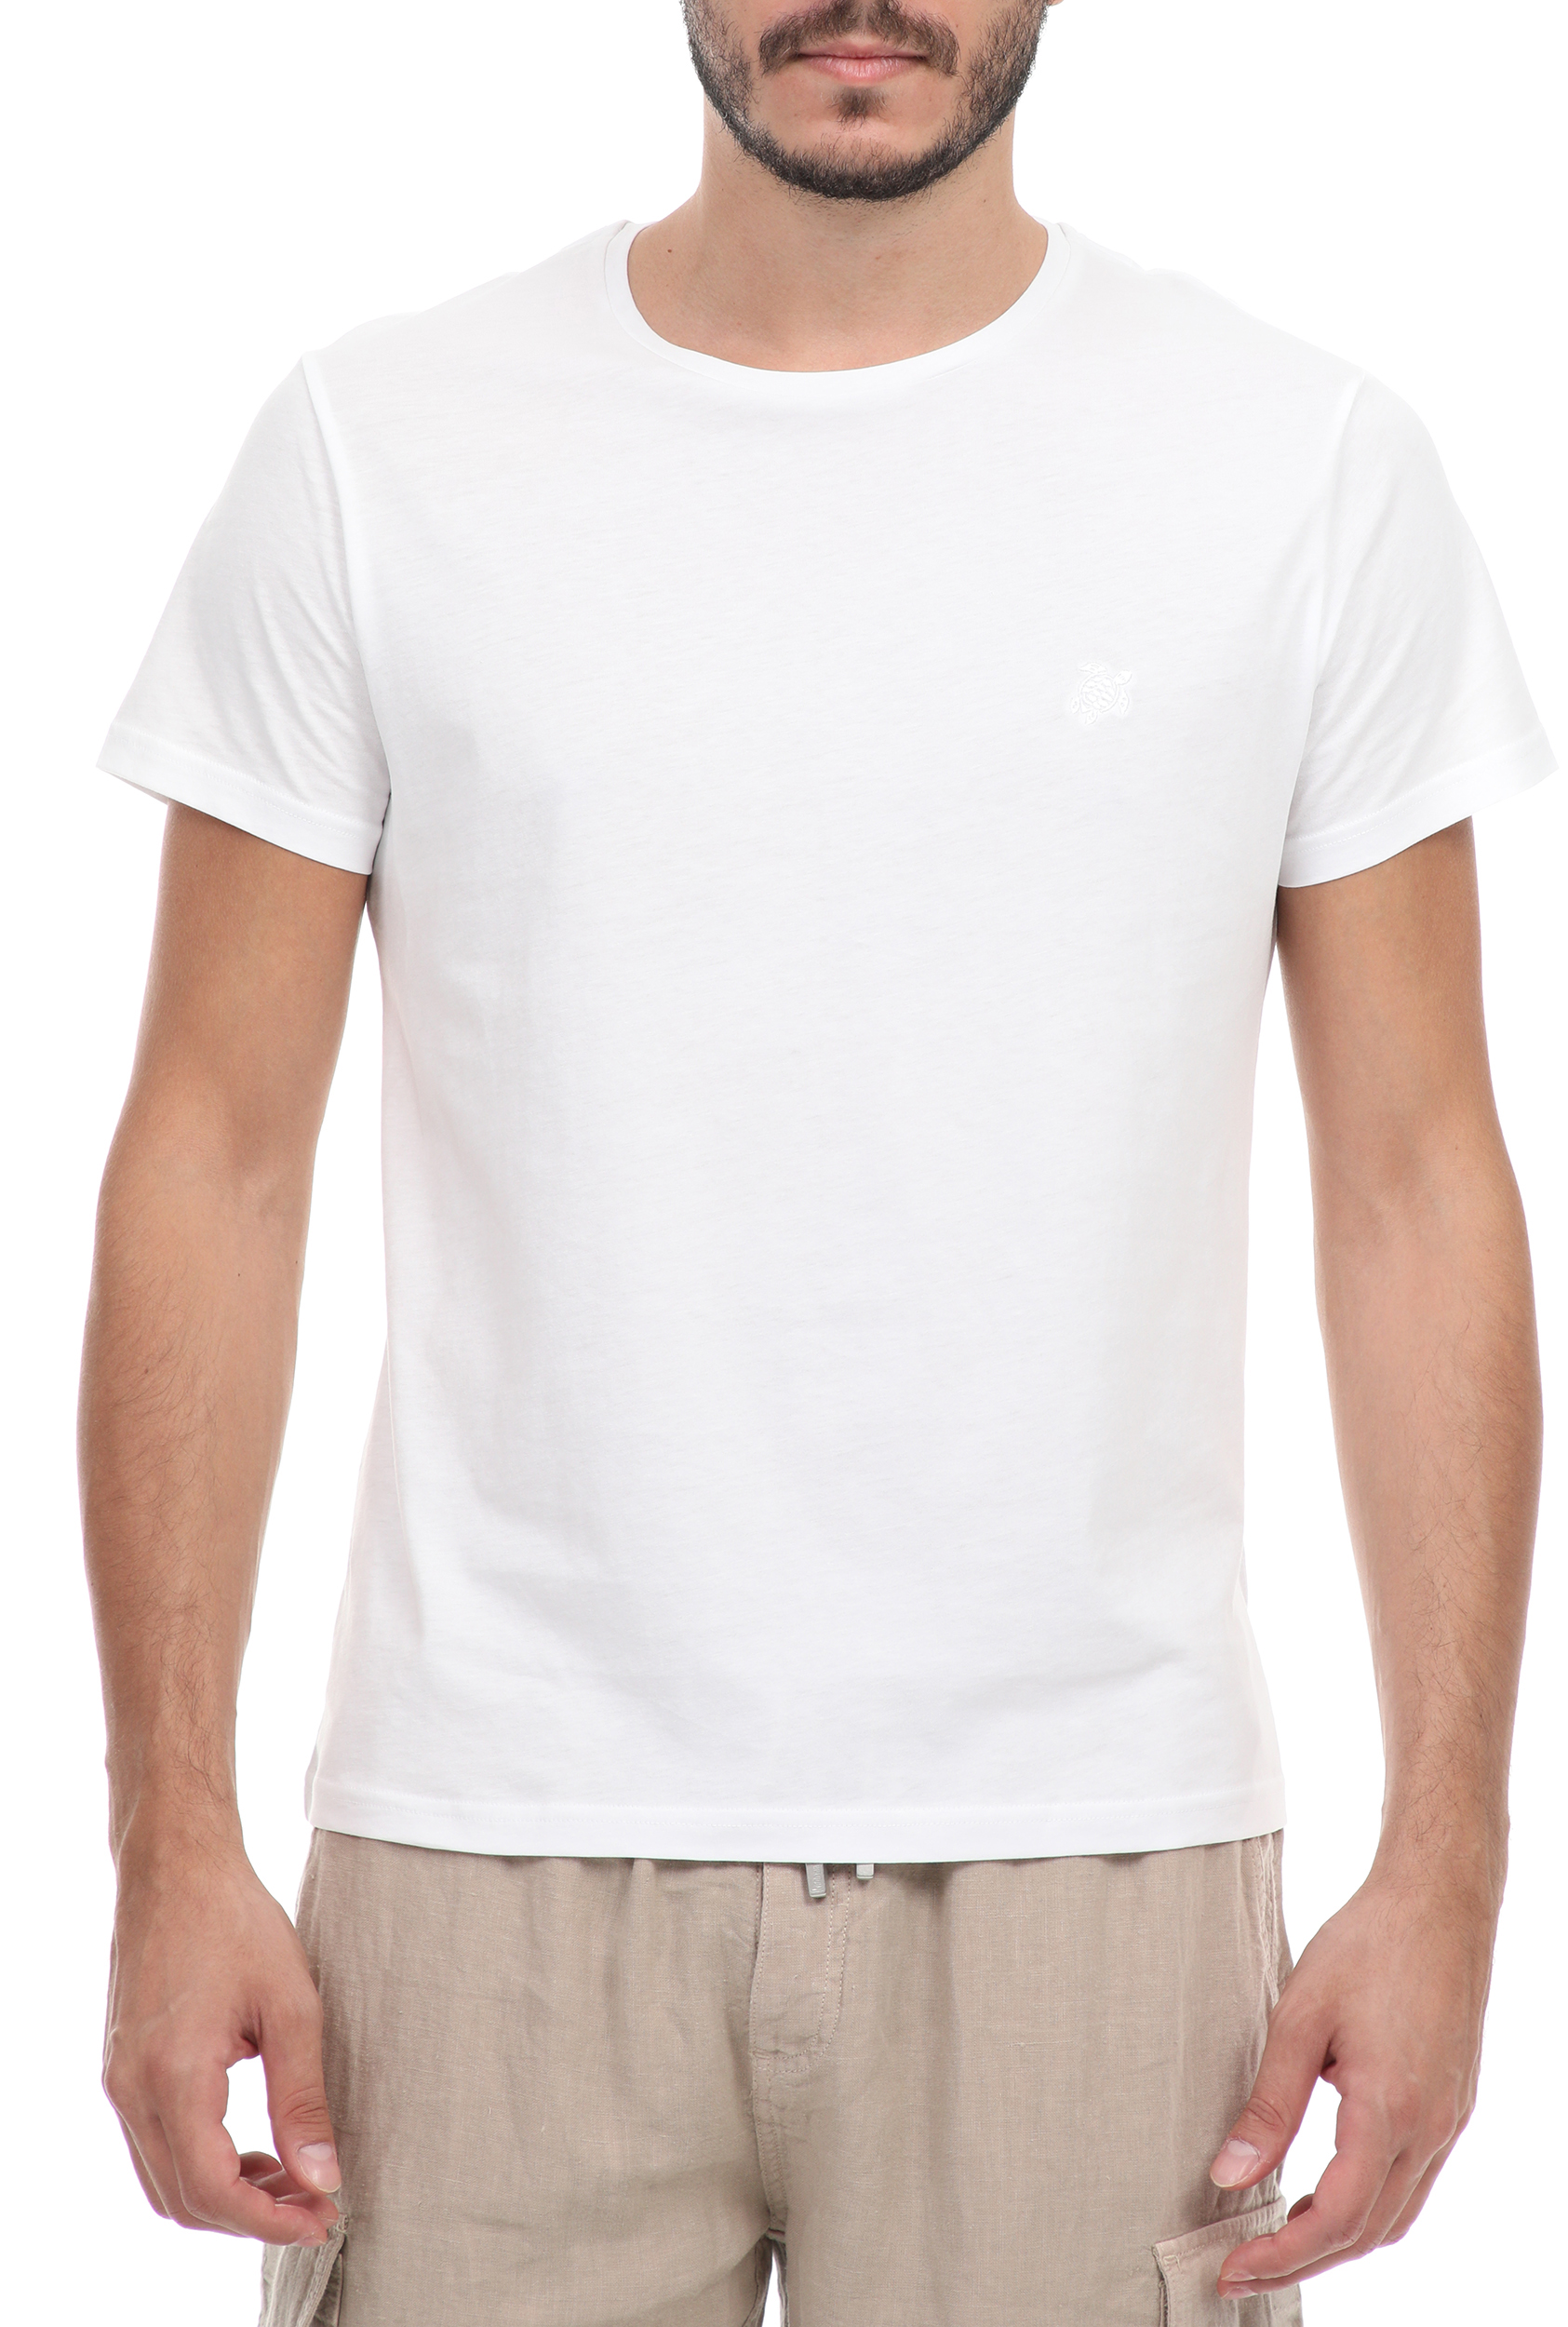 Ανδρικά/Ρούχα/Μπλούζες/Κοντομάνικες VILEBREQUIN - Ανδρικό t-shirt VILEBREQUIN TAO λευκό